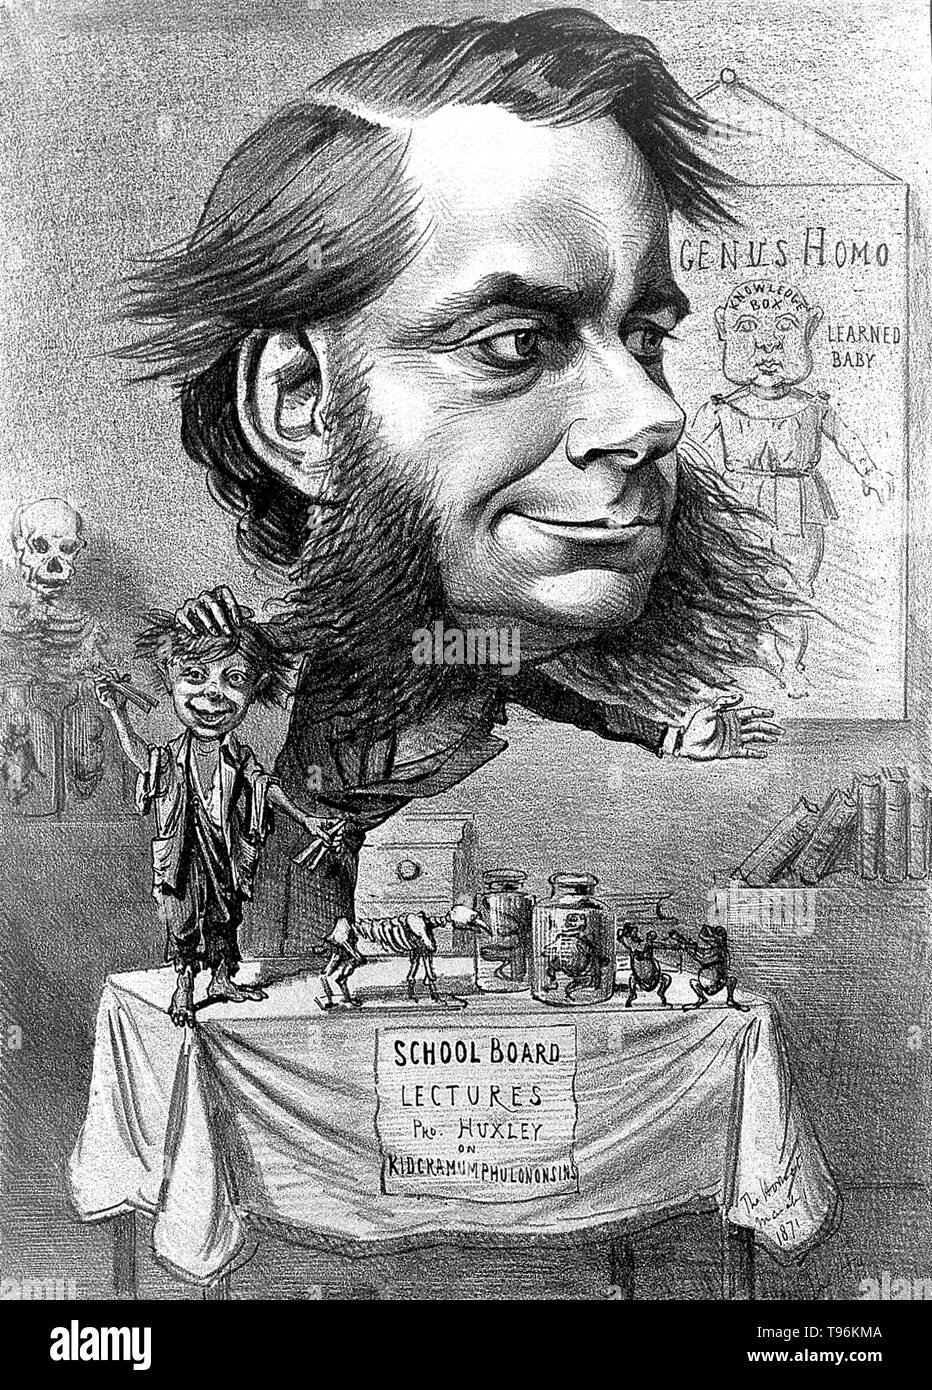 Thomas Henry Huxley (4. Mai 1825 - 29. Juni 1895) war ein englischer Biologe, als "'Darwin Bulldogge'' für seine Befürwortung von Charles Darwins Theorie der Evolution bekannt. Huxleys berühmte 1860 Aussprache mit Samuel Wilberforce war ein wichtiger Moment in der breitere Akzeptanz der Evolution, und in seiner eigenen Karriere. Huxley war langsam zu einigen von Darwins Ideen, wie Gradualismus akzeptieren, und war unbestimmt über die natürliche Selektion, aber trotz dieser war er in seinen öffentlichen Unterstützung von Darwin von ganzem Herzen. Stockfoto